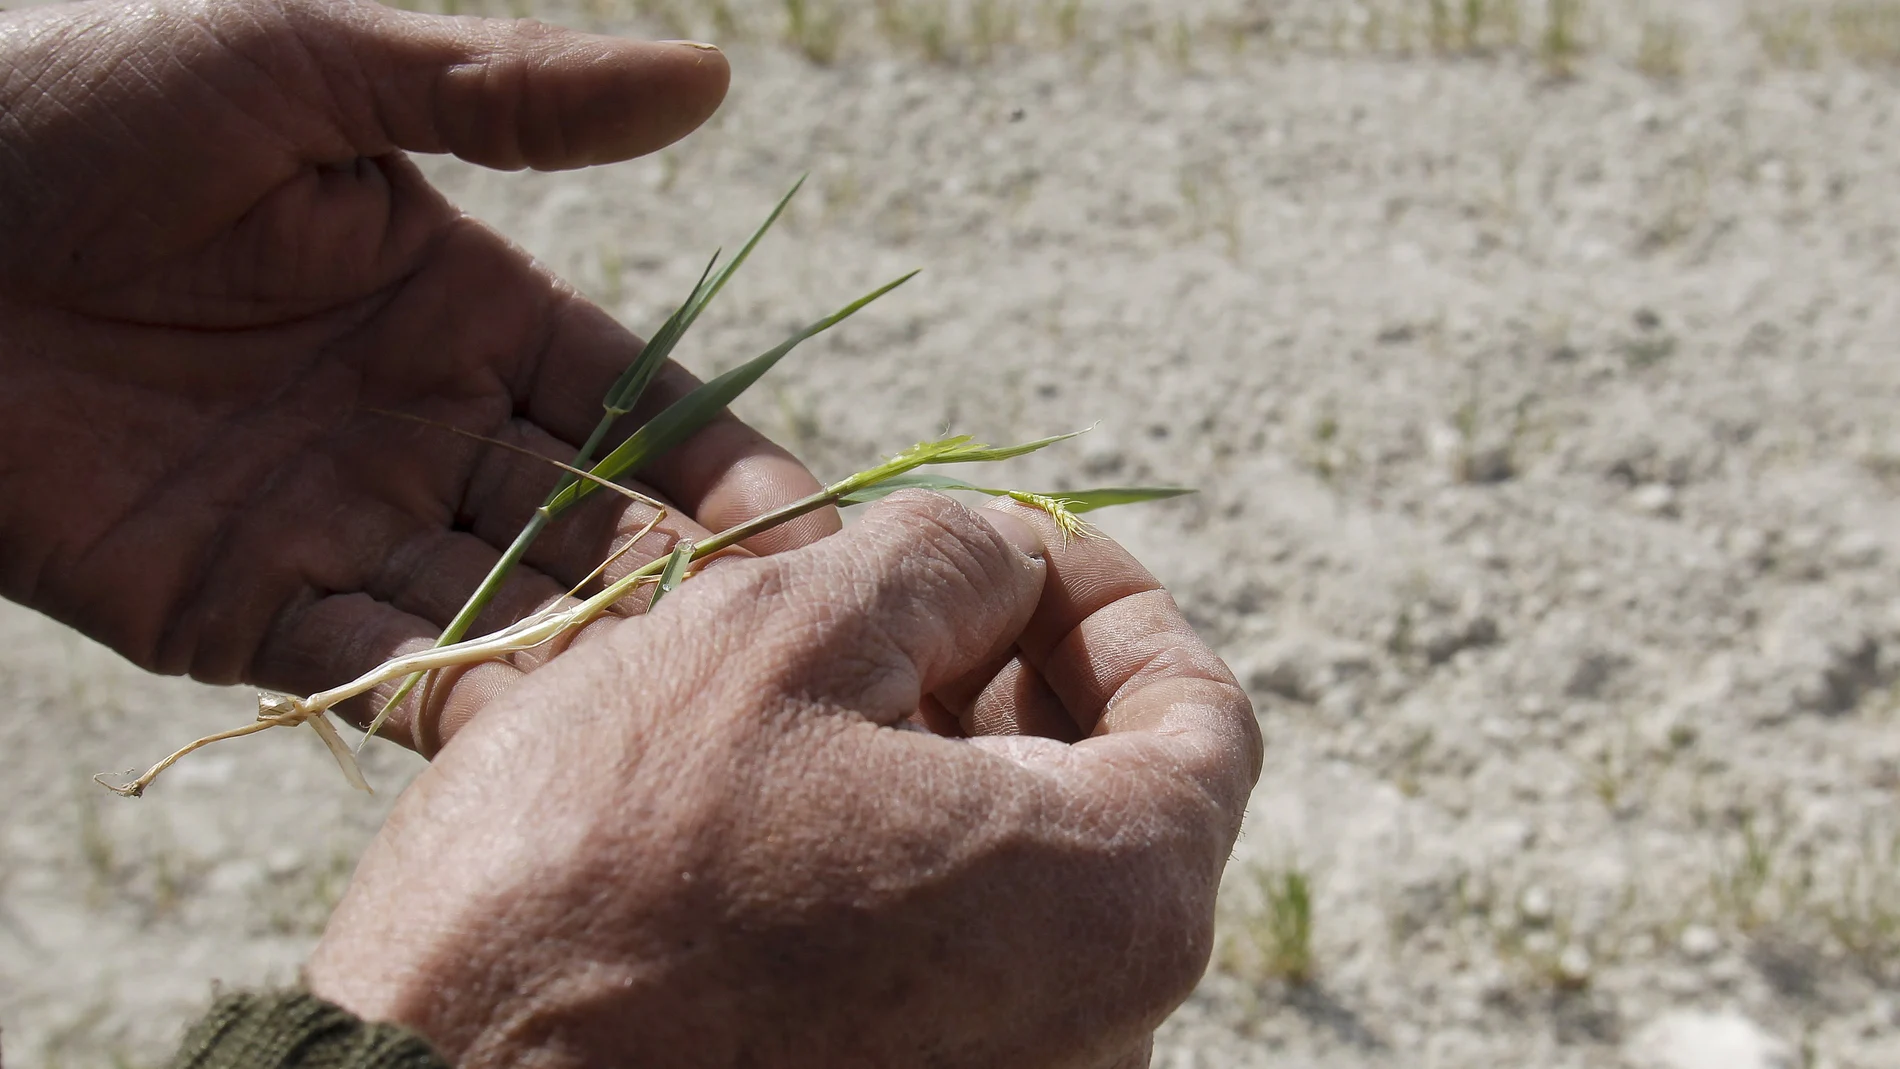 Un labrador muestra los efectos devastadores que la sequía y el calor producen sobre su plantación de cereal.